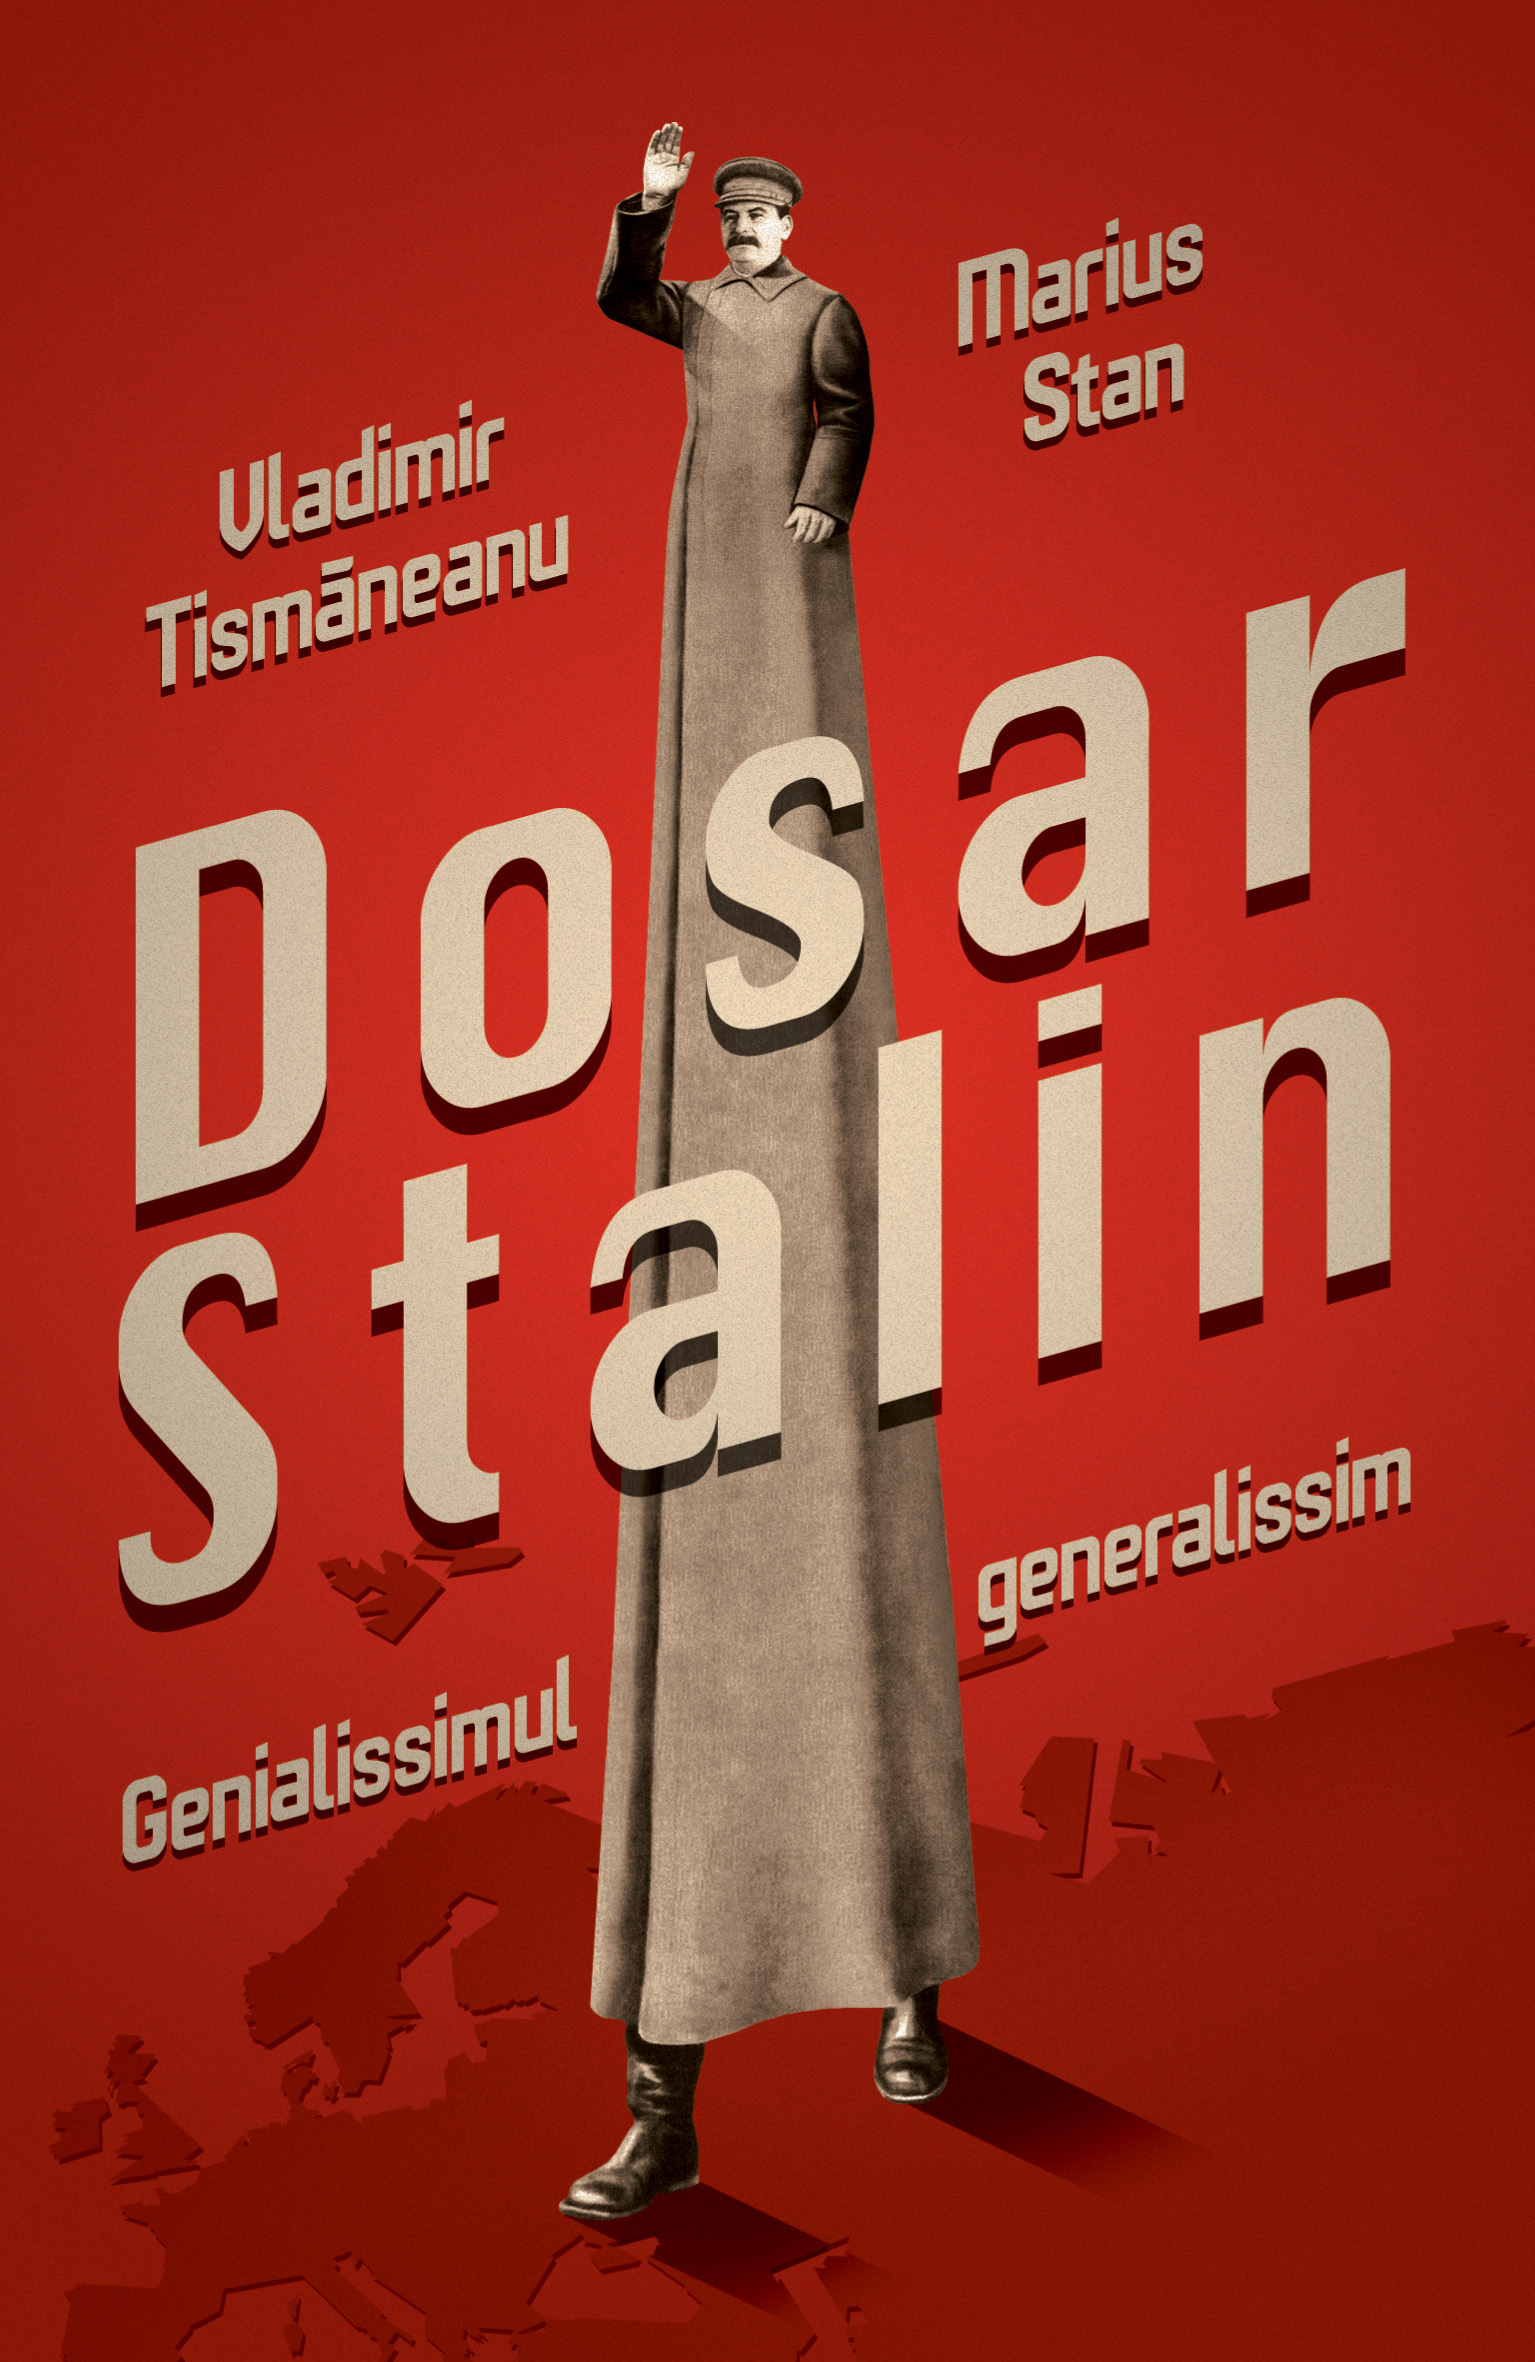 Stalin/ de Vladimir Tismăneanu şi Marius Stan